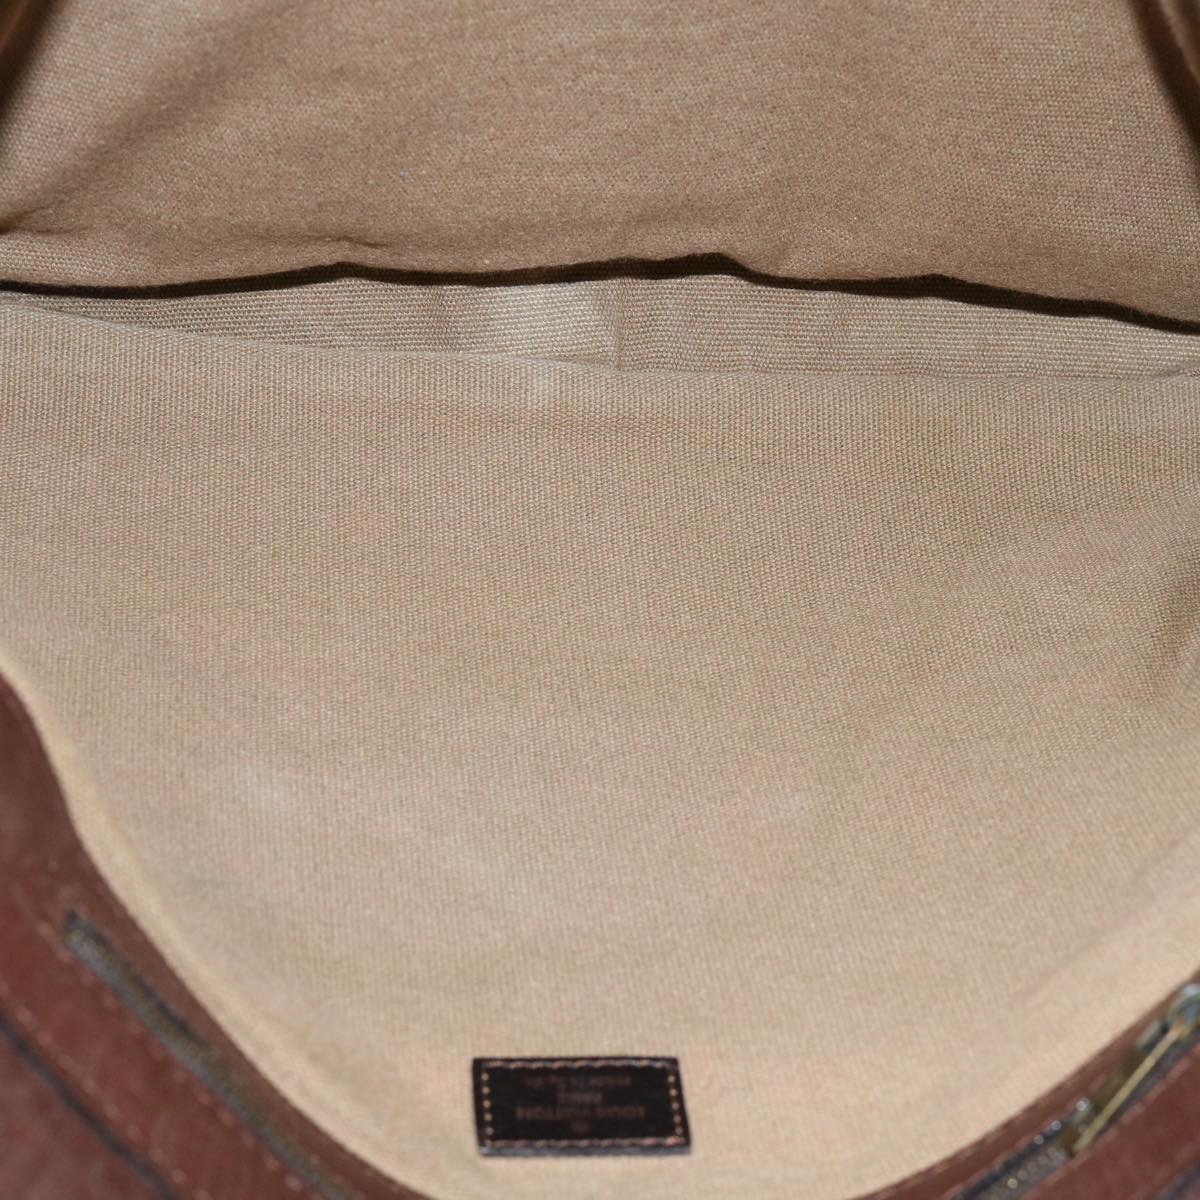 LOUIS VUITTON Utah Messenger Shoulder Bag Leather Brown M32625 LV Auth bs10902